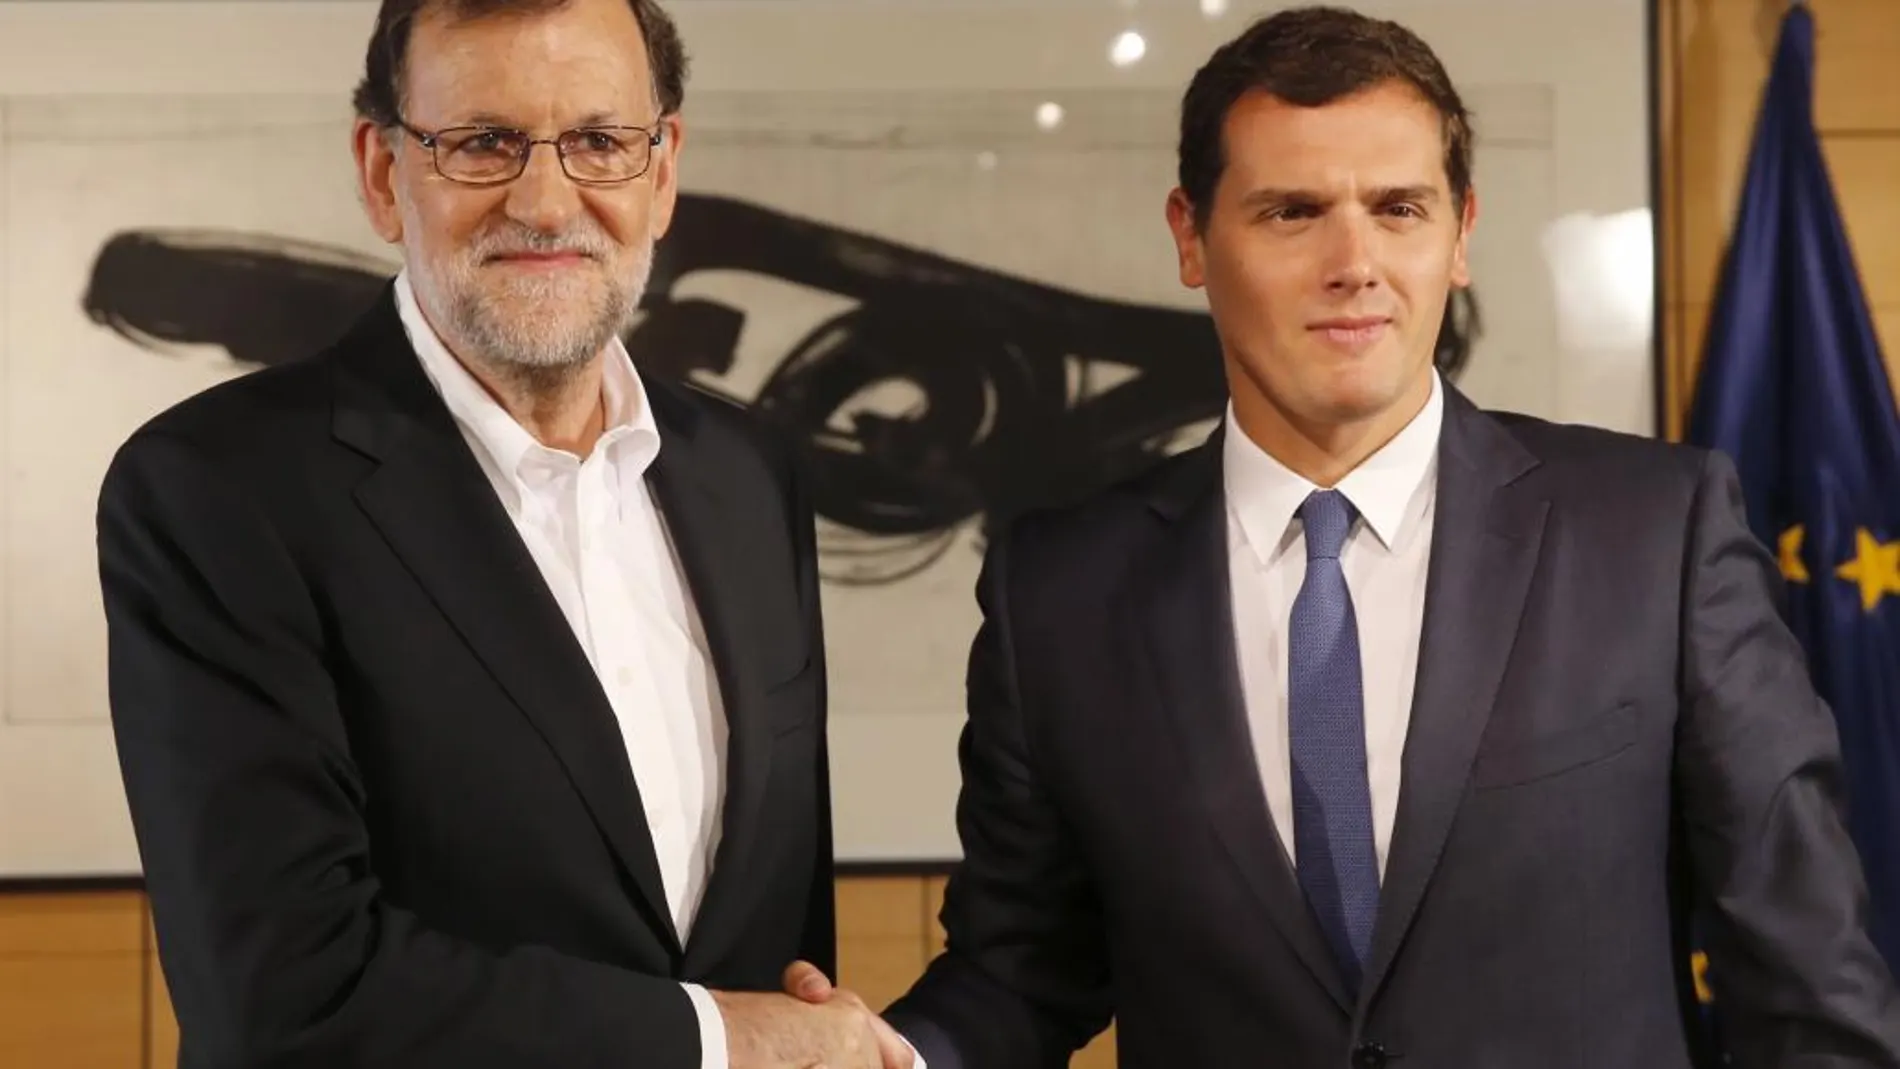 Segunda reunión tras el mandato del Rey. Rajoy no lleva corbata y Rivera sí